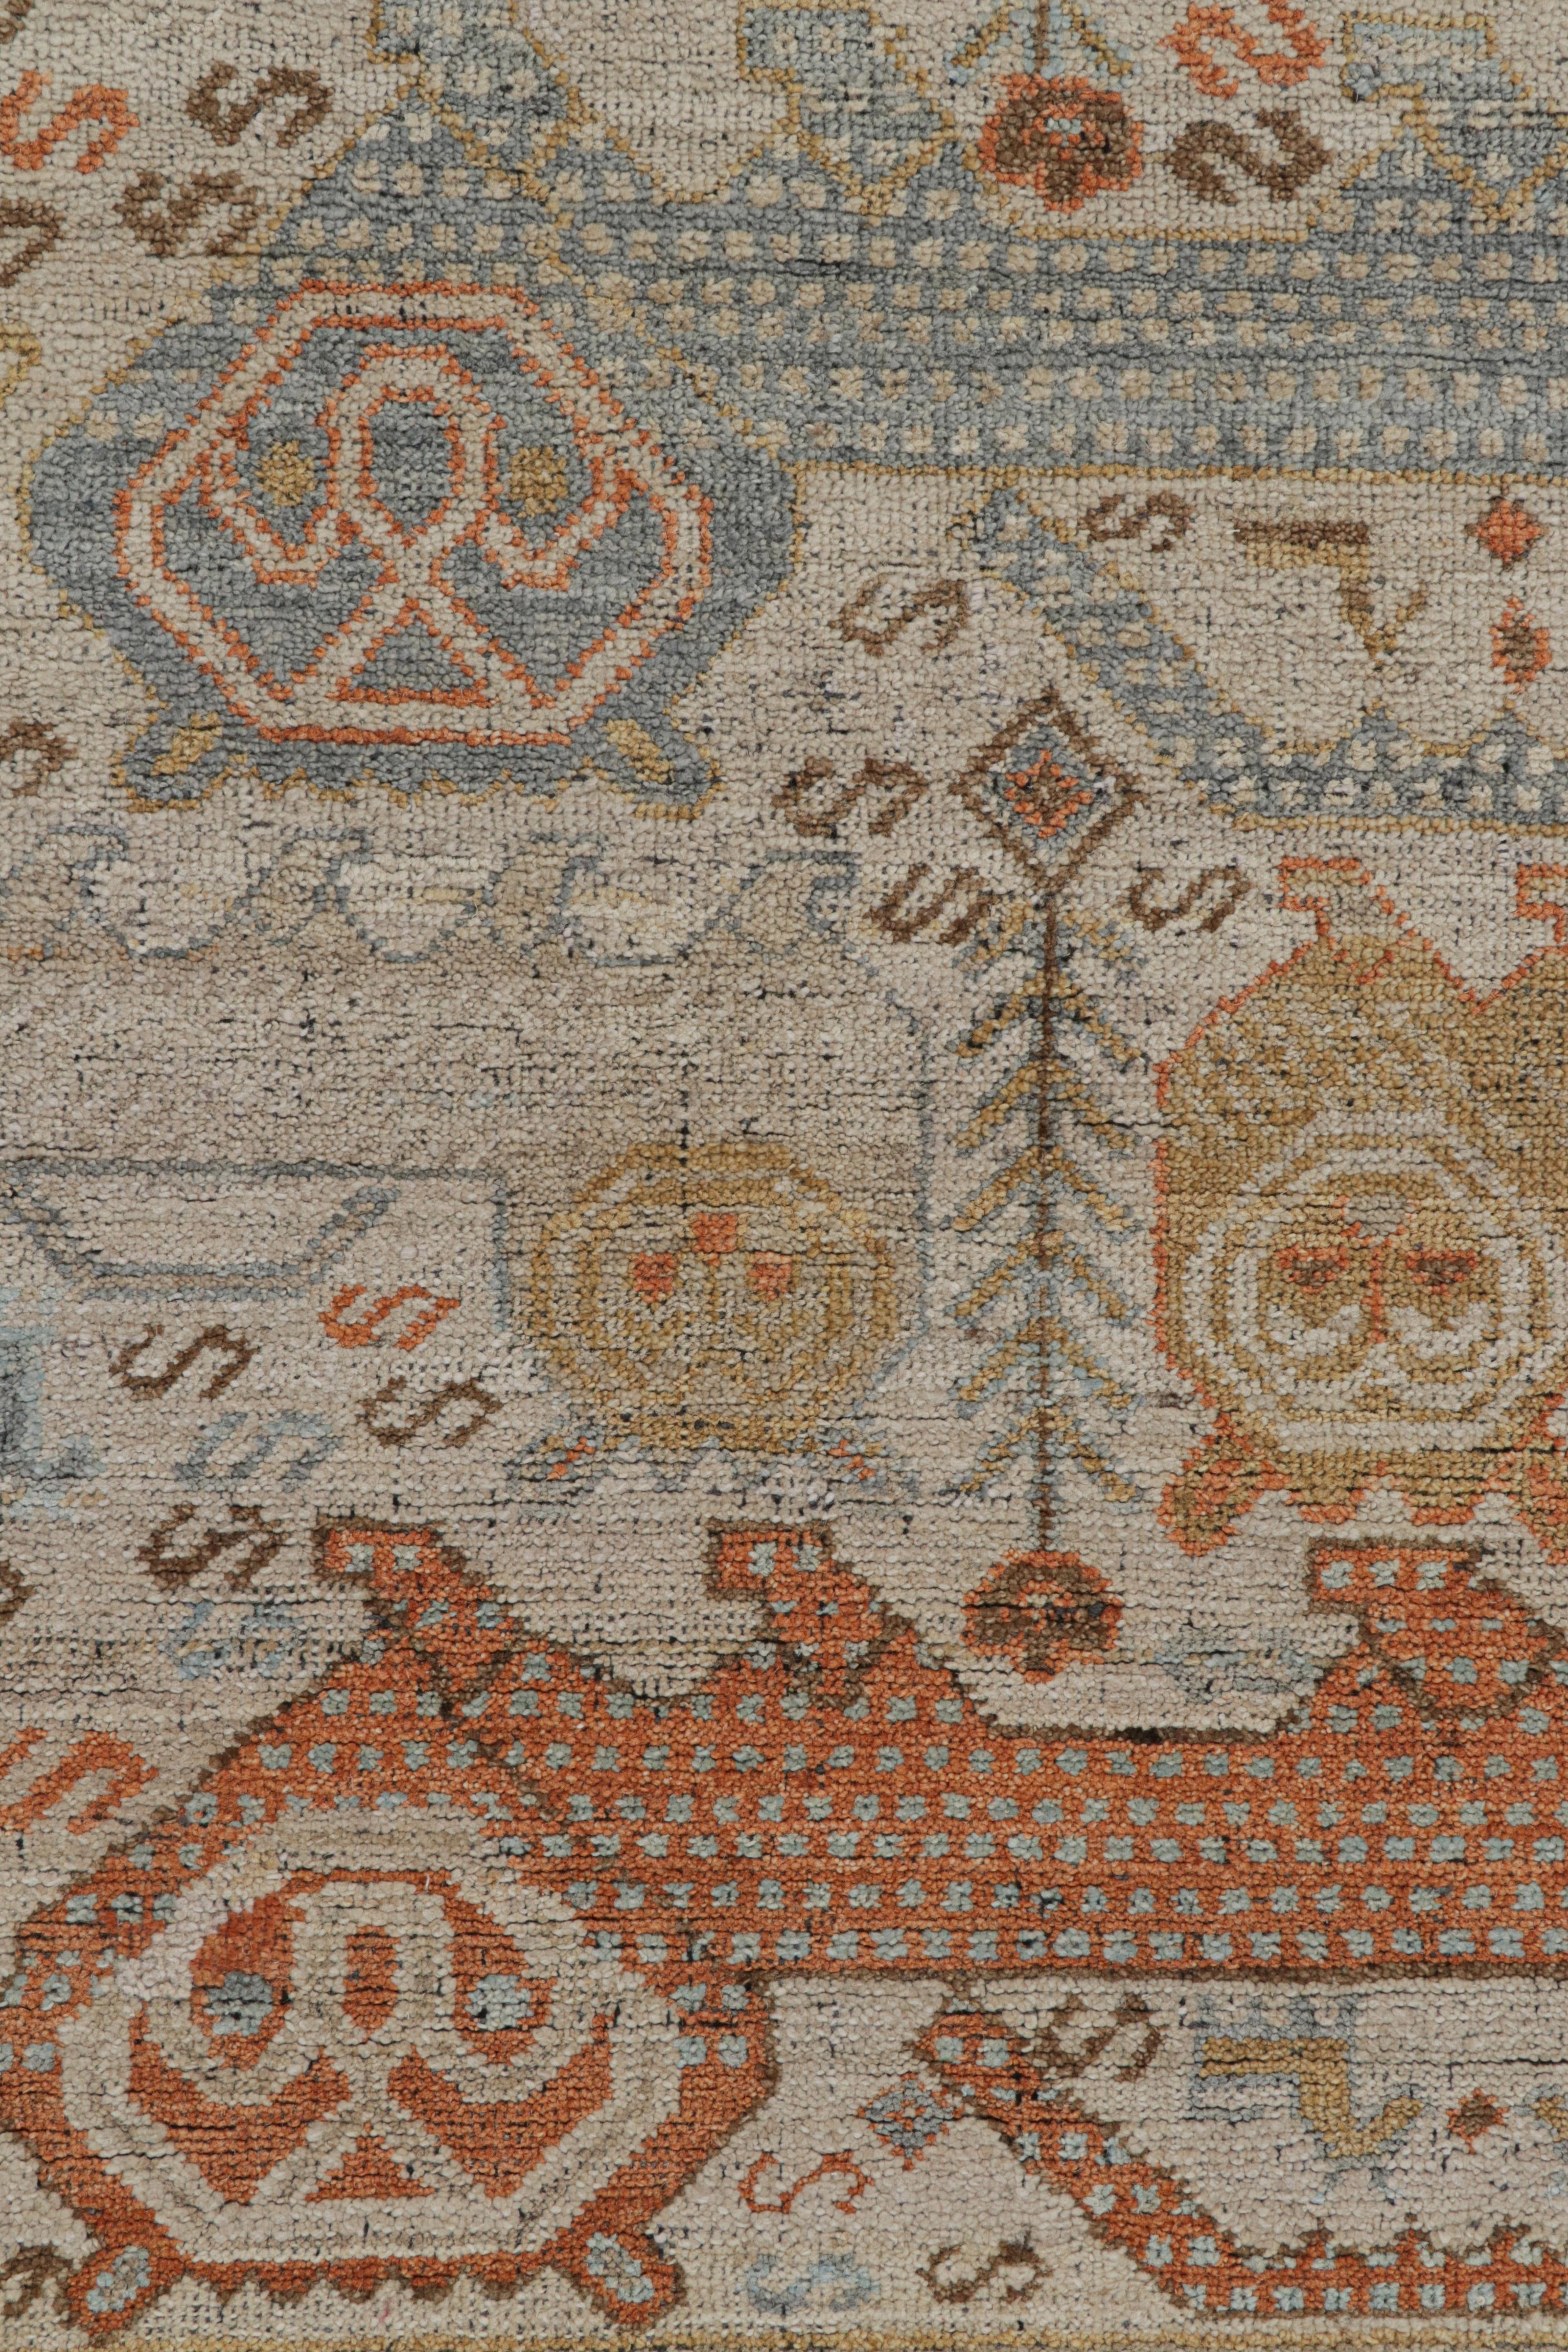 XXIe siècle et contemporain Rug & Kilim's Tribal Style Rug in Polychromatic Lion Pictorial Patterns (tapis de style tribal aux motifs polychromes de lions) en vente